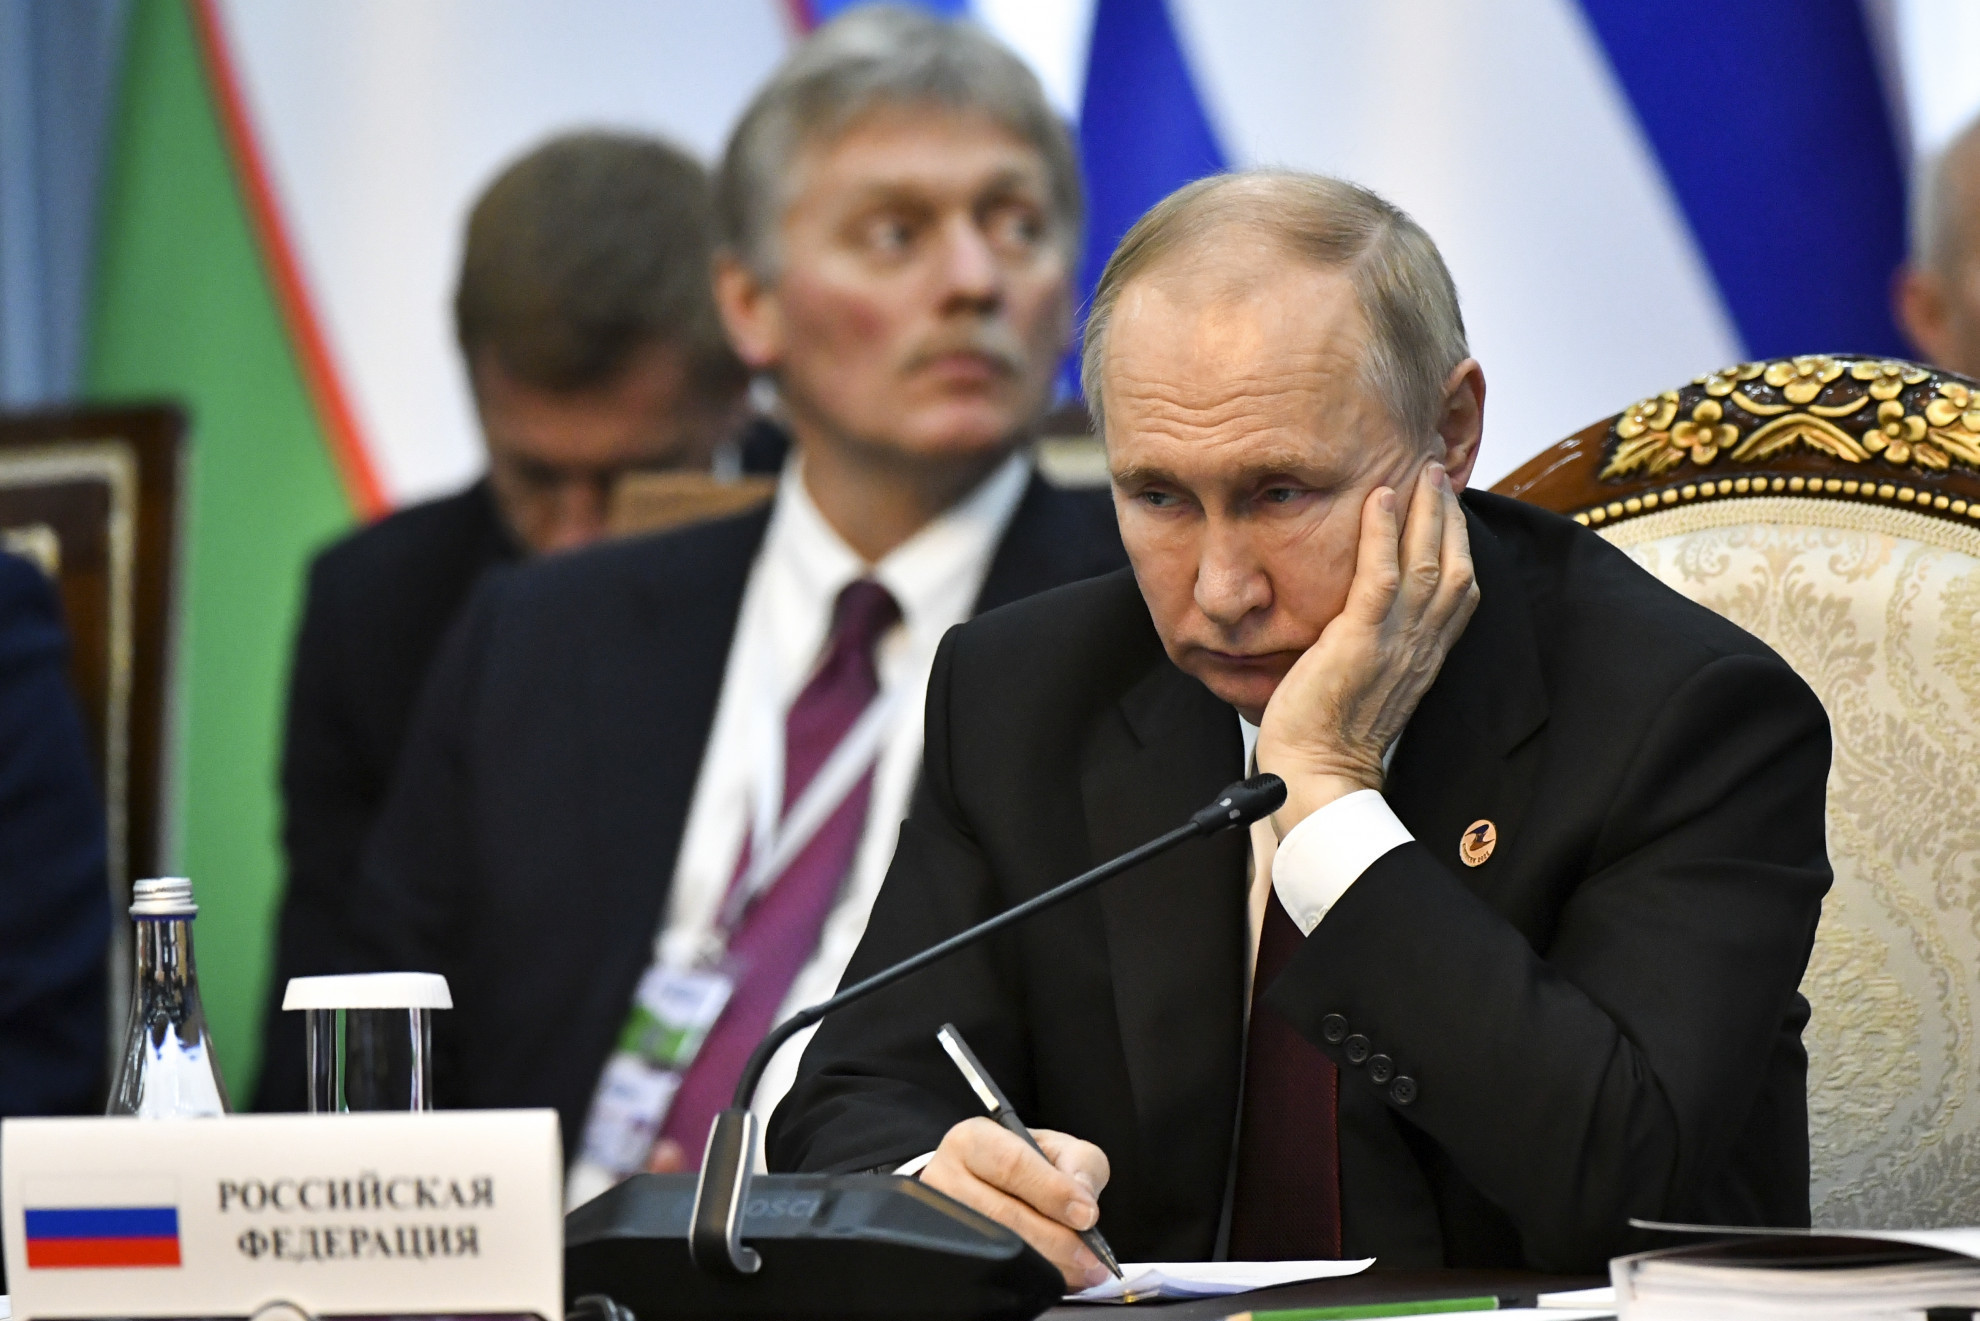 Putin sull'Ucraina: "Alla fine bisognerà arrivare ad un accordo"